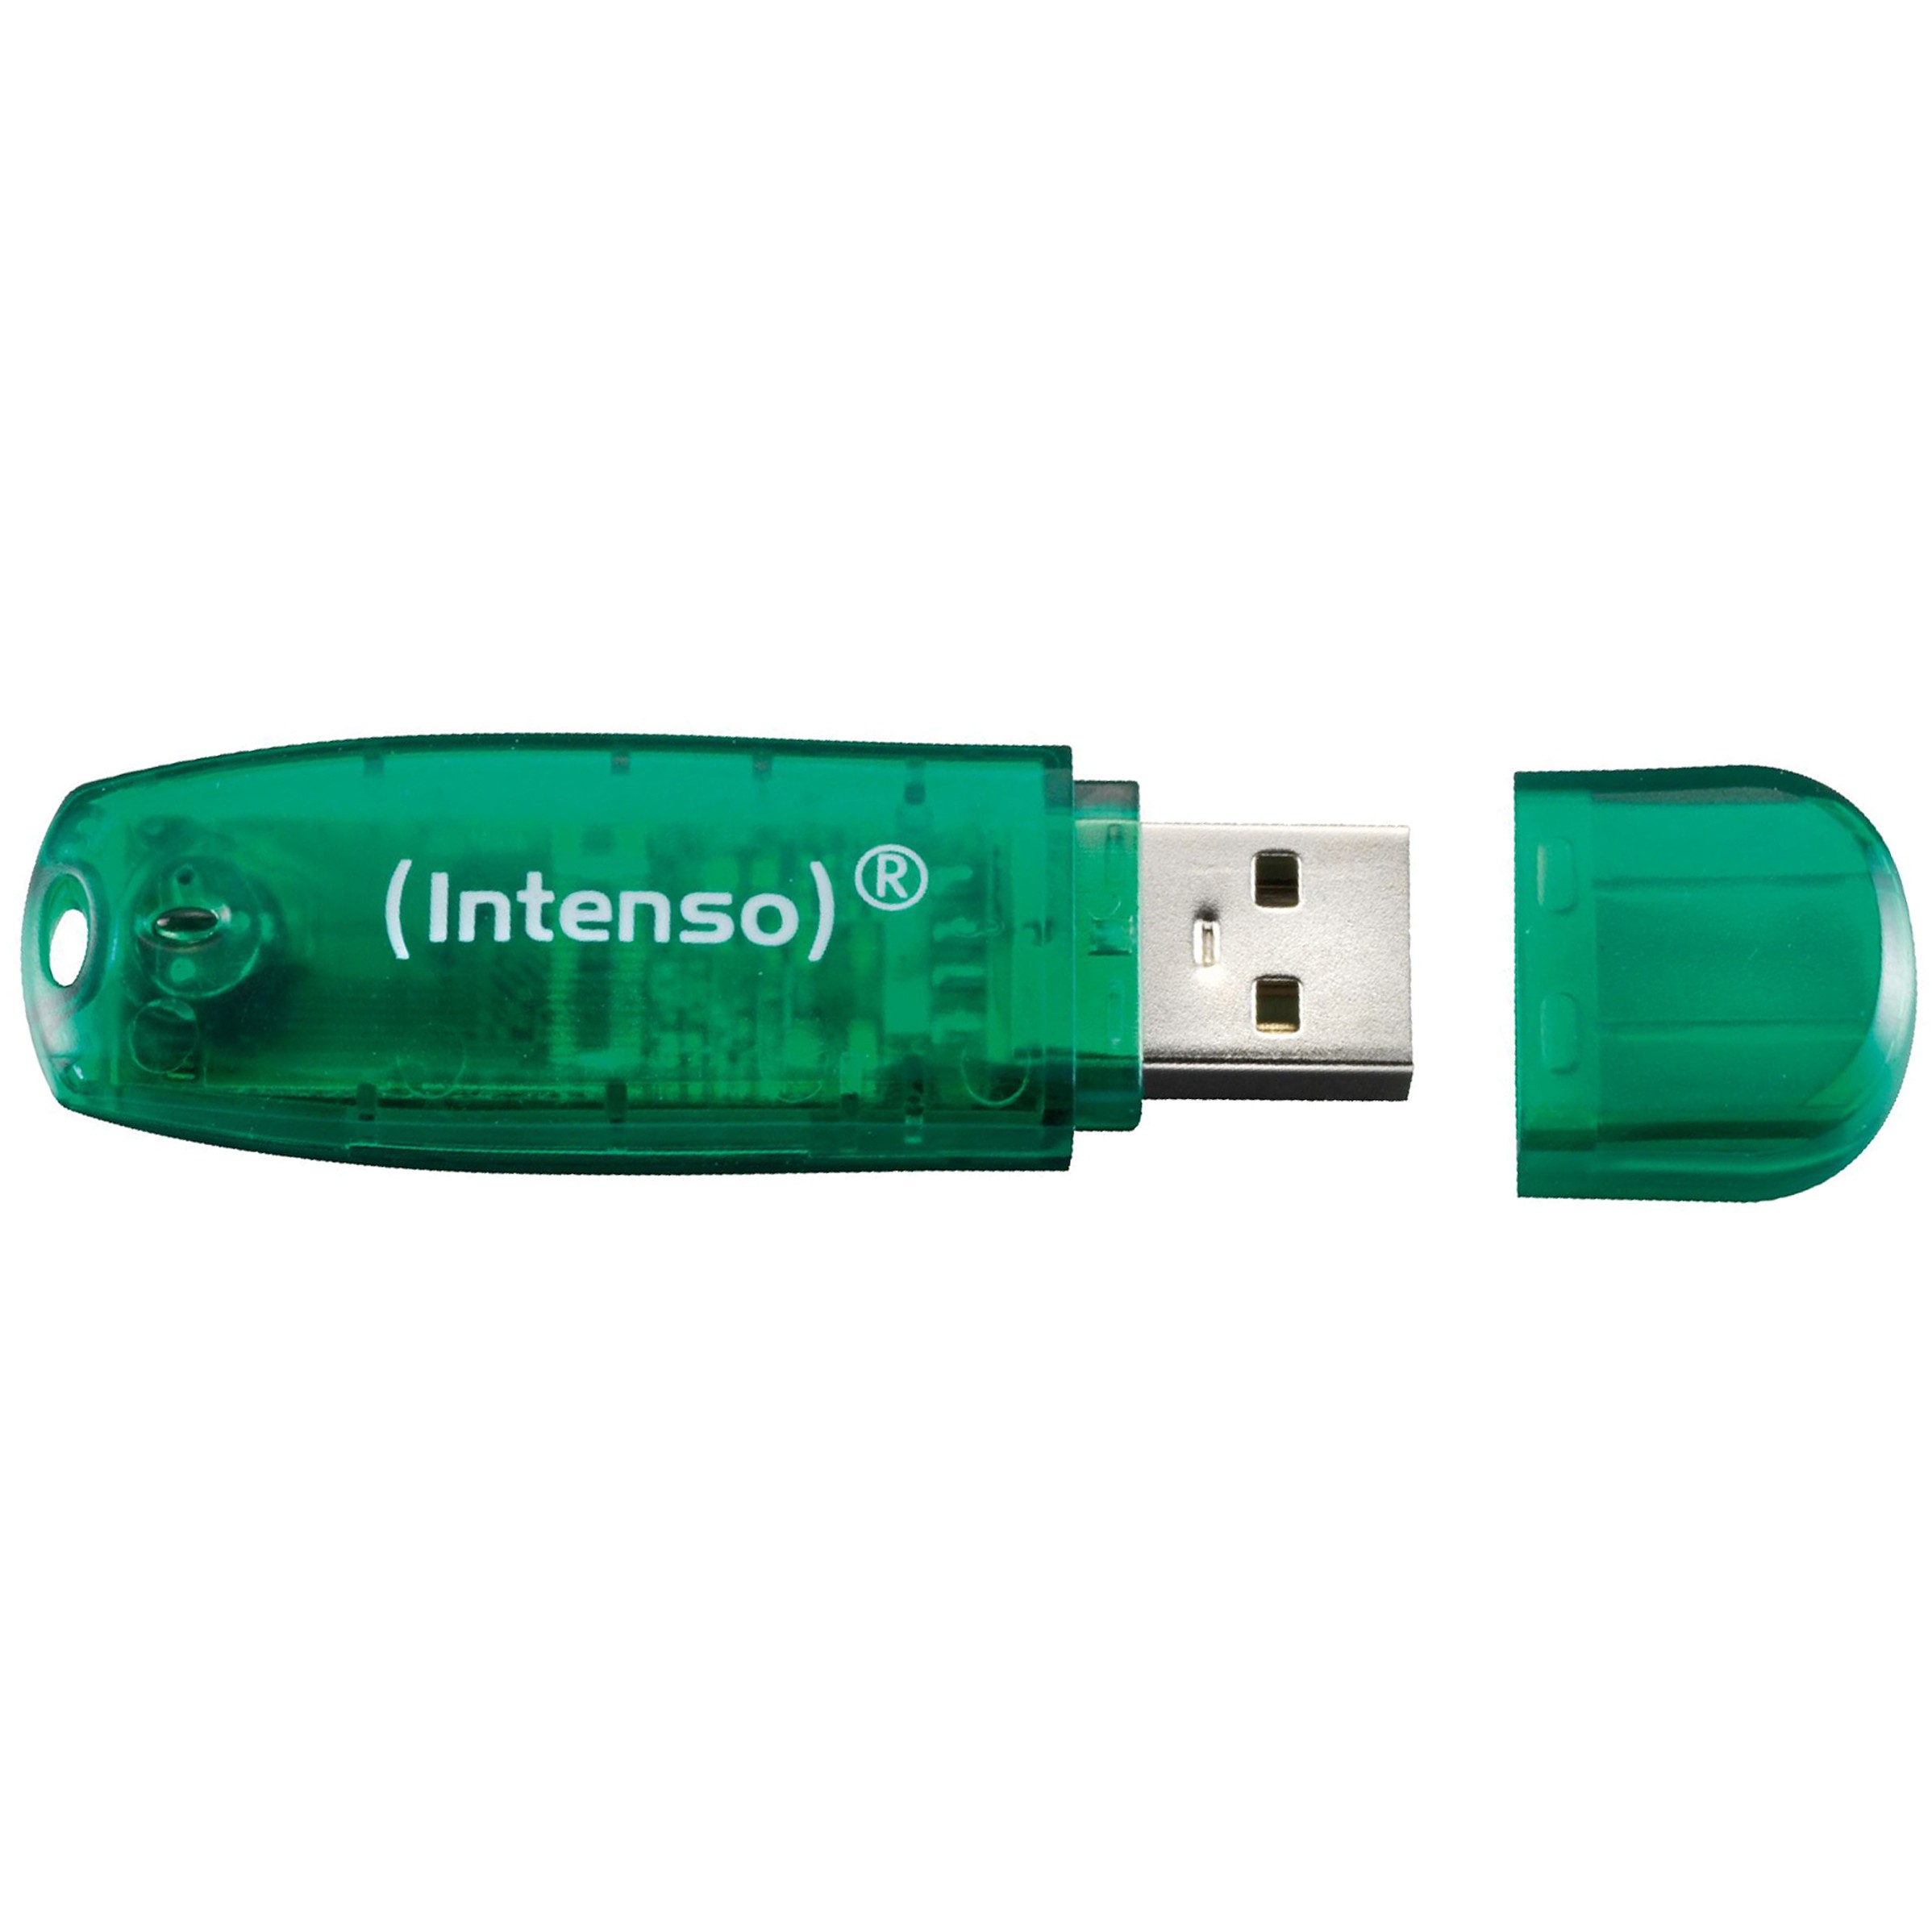 Intenso 3502460, USB-Stick, Intenso Rainbow Line USB 3502460 (BILD2)